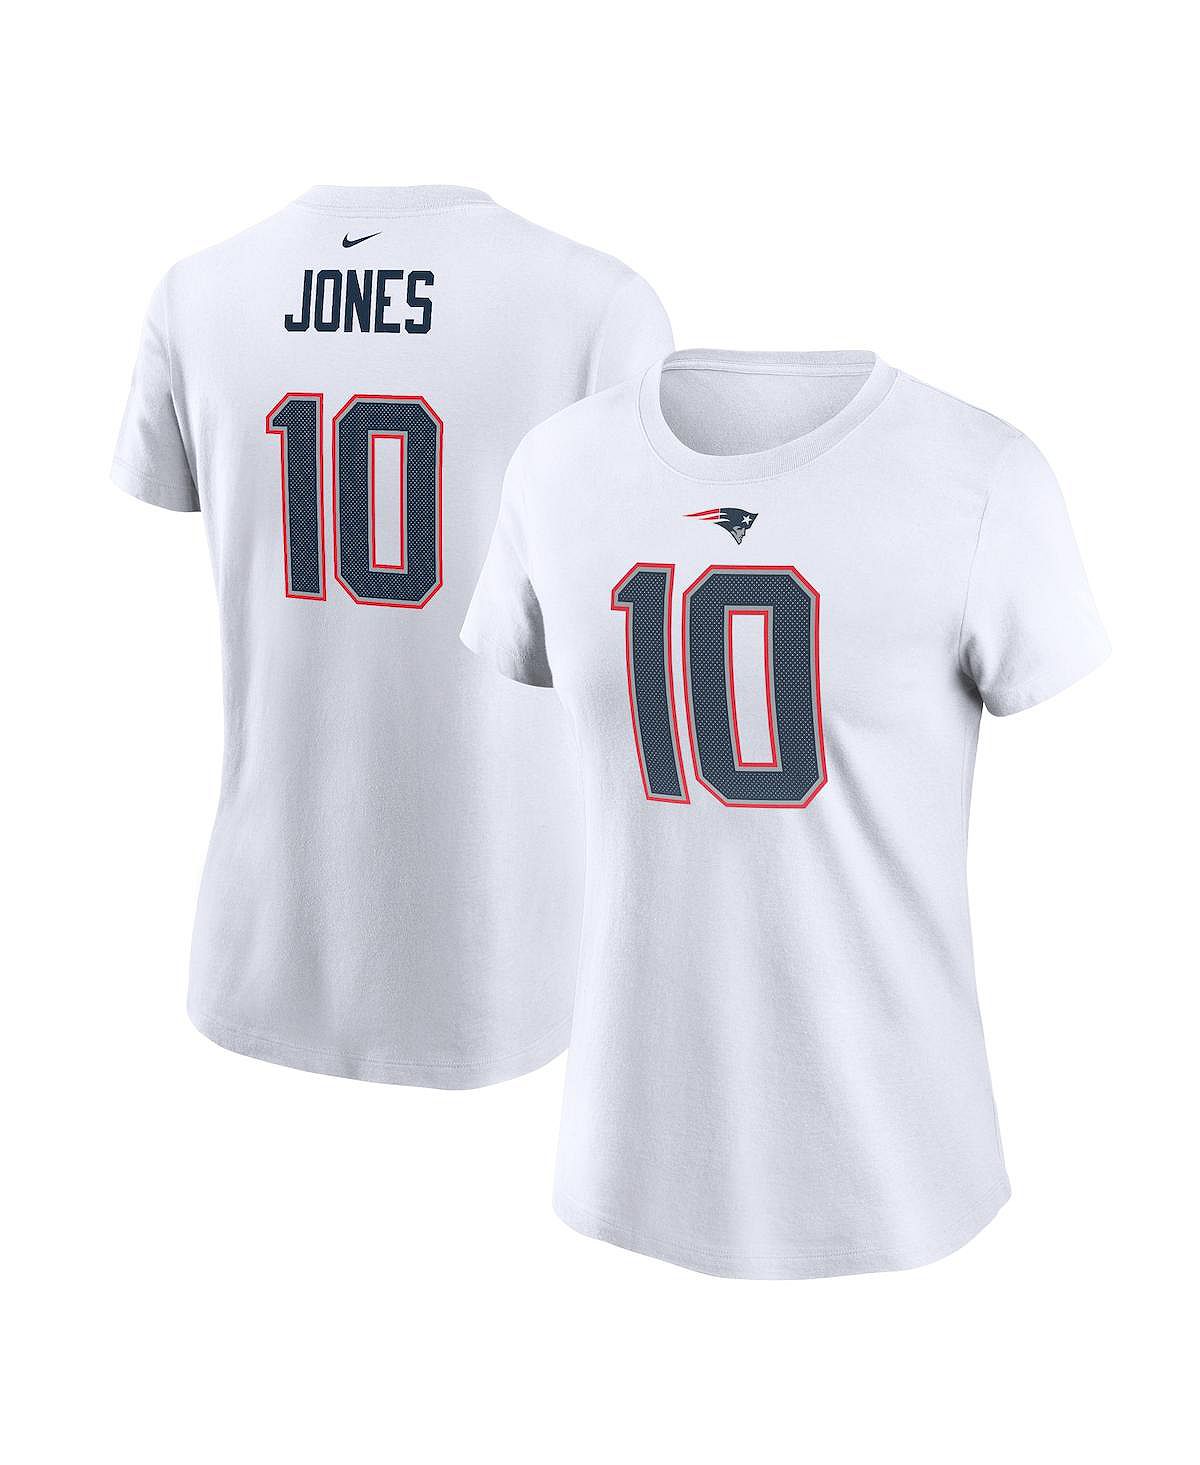 Женская белая футболка Mac Jones New England Patriots с именем игрока и номером Nike, белый